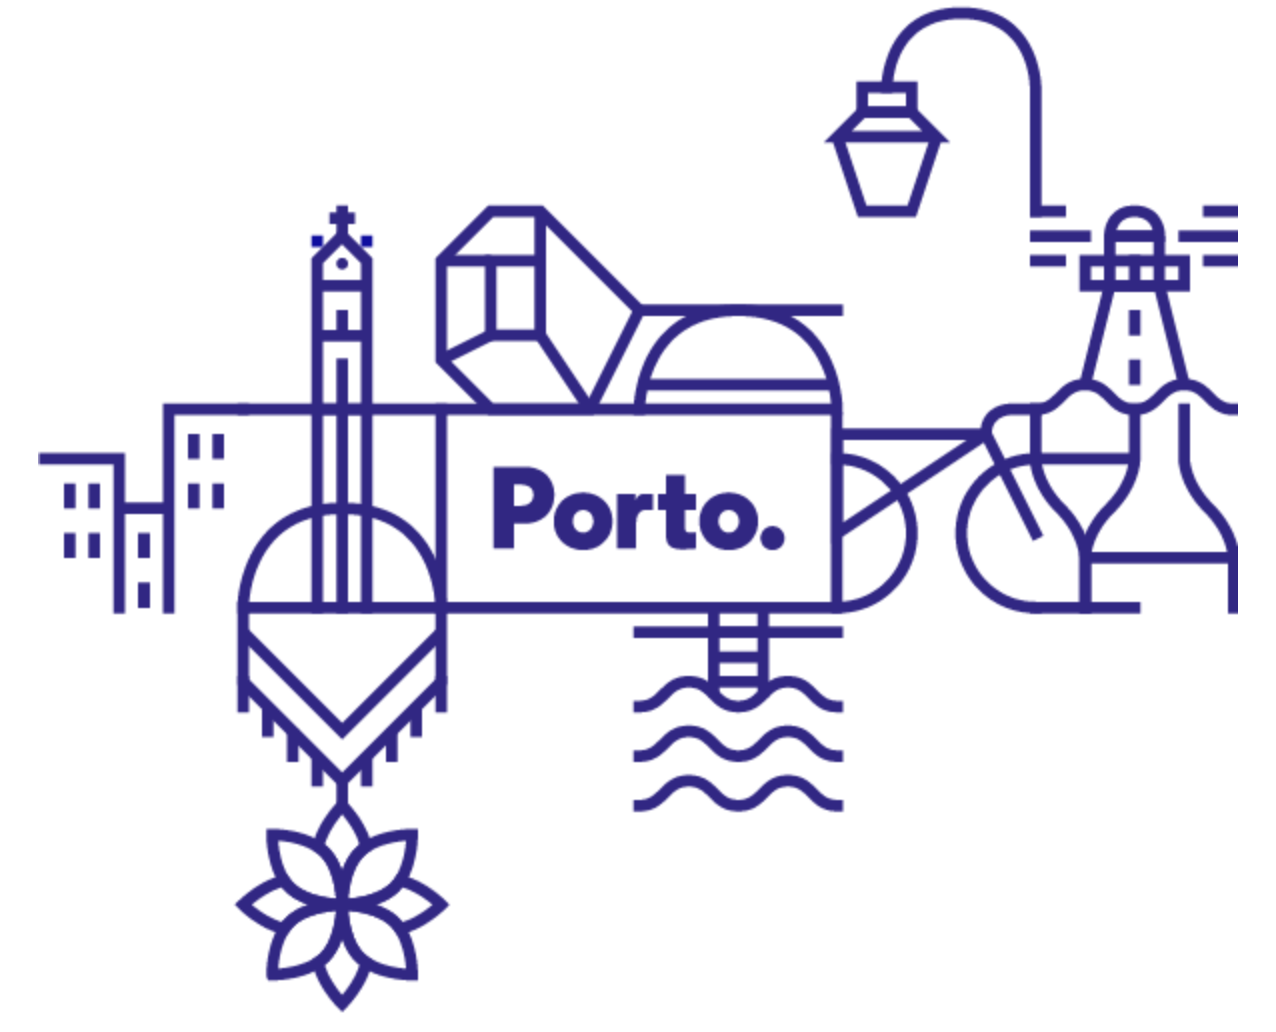 Il logo di Porto: il nome della città, in azzurro marino, è dentro un rettangolo bianco e c'è il punto finale. Intorno al rettangolo, una rete di simboli stilizzati che rappresentano punti caratteristici della città.